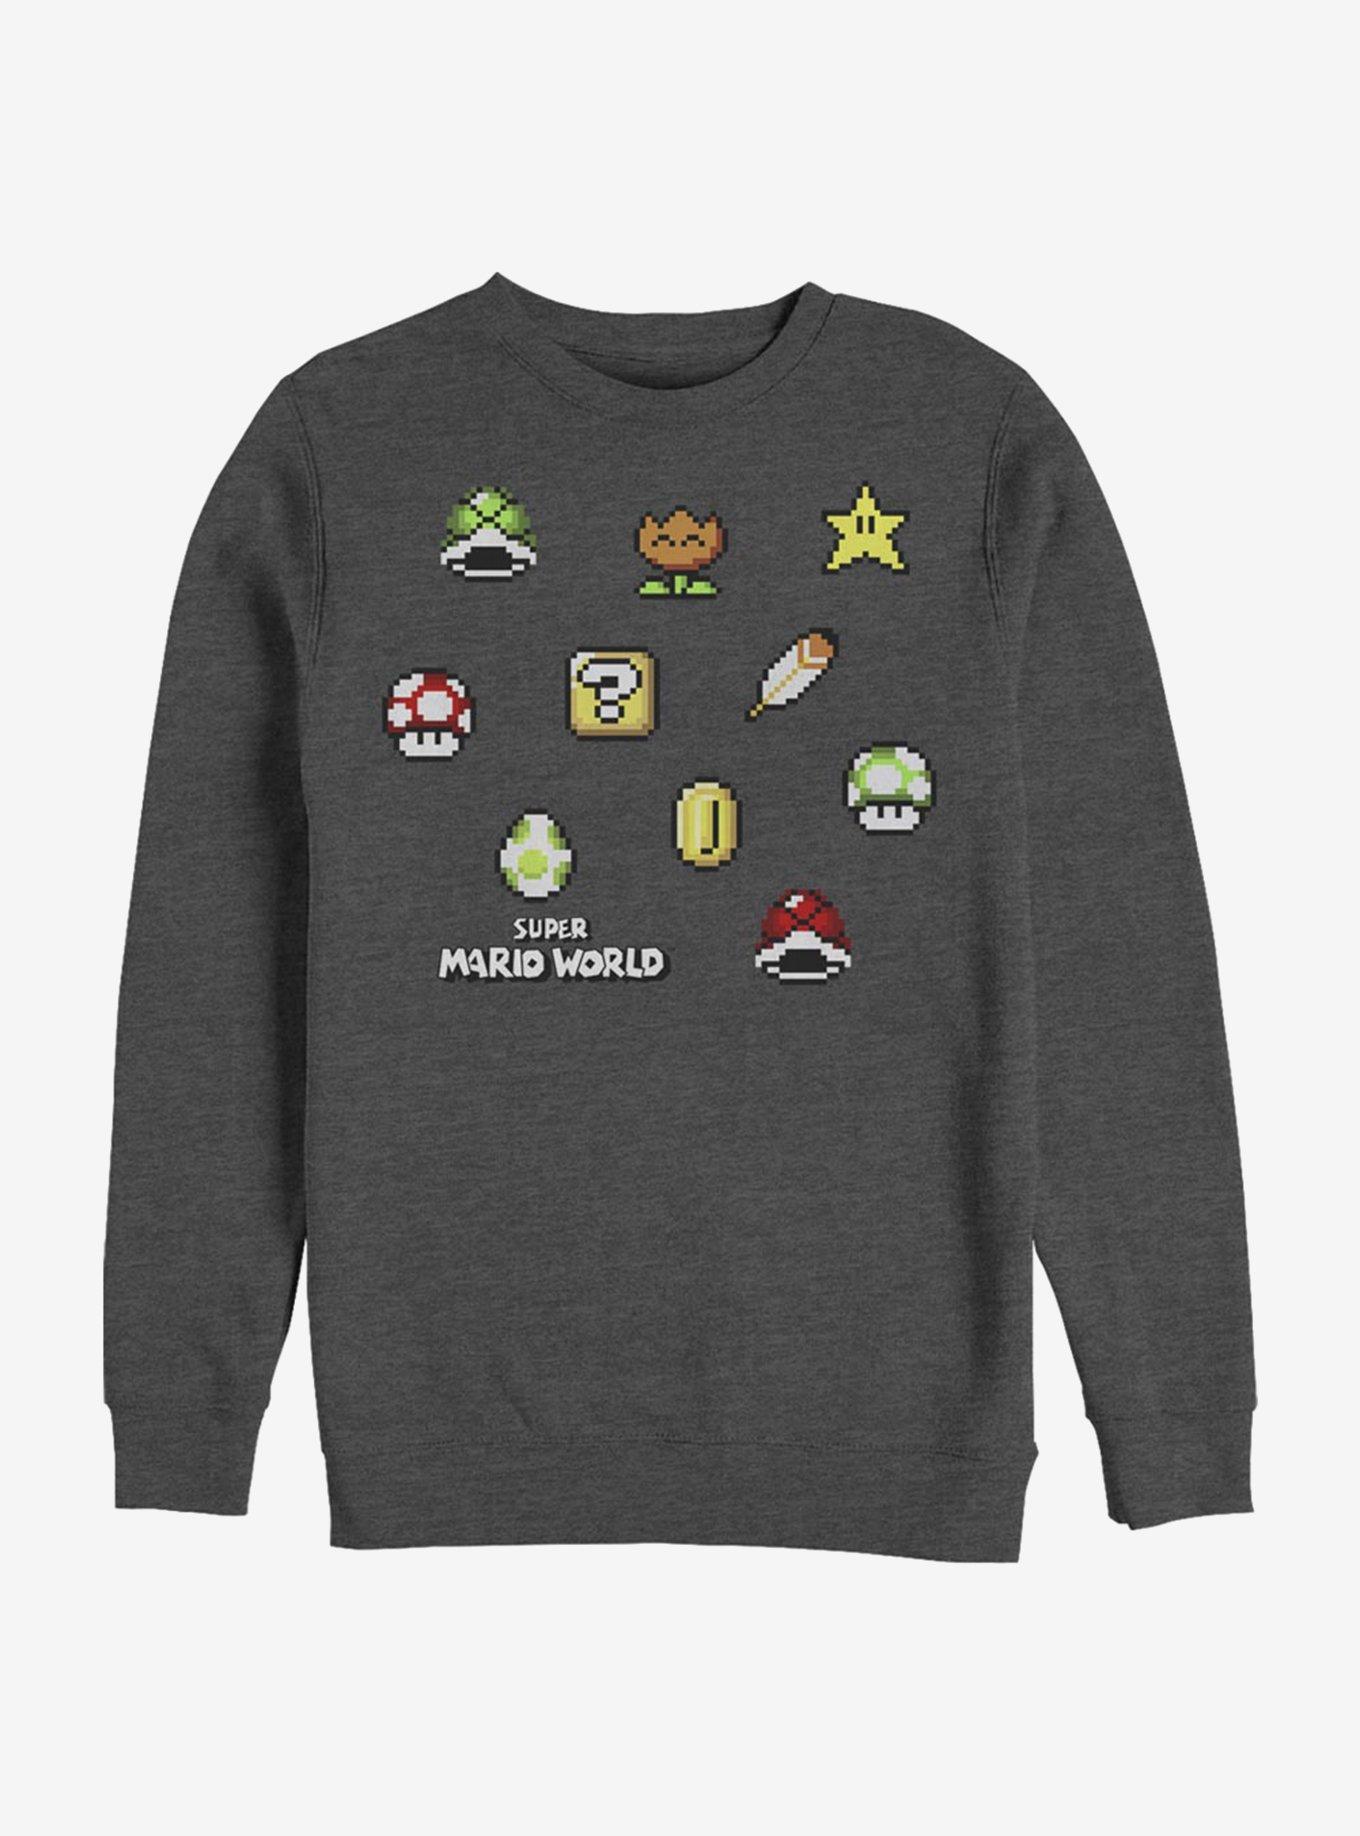 Super Mario Maker Items Scatter Crew Sweatshirt, CHAR HTR, hi-res